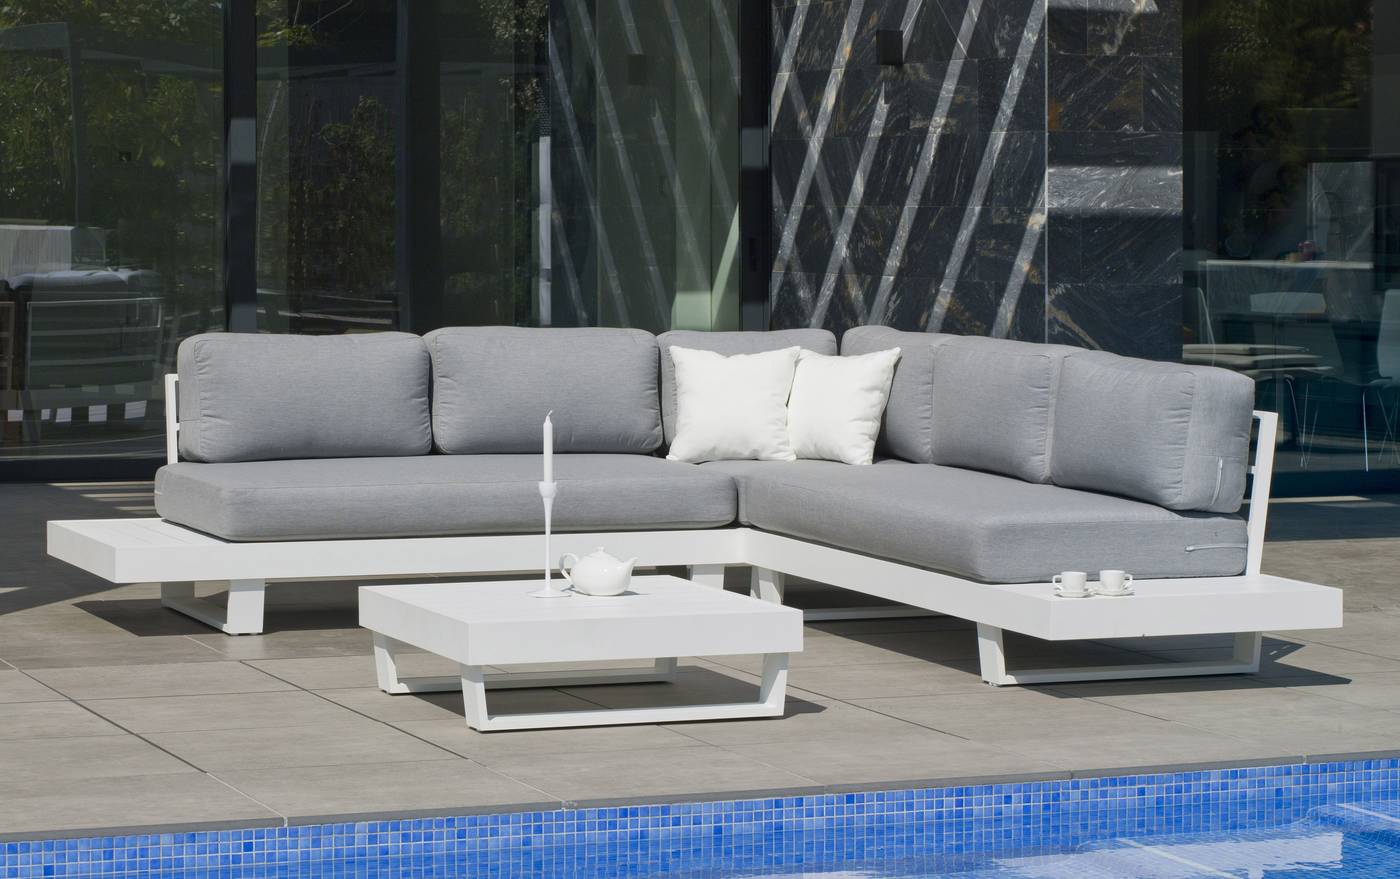 Set Rinconera Aluminio Luxe Menfis-7 - Rinconera confort lujo 5 plazas, con cojines desenfundables + mesa de centro. Estructura robusta de aluminio color blanco, antracita o champagne.